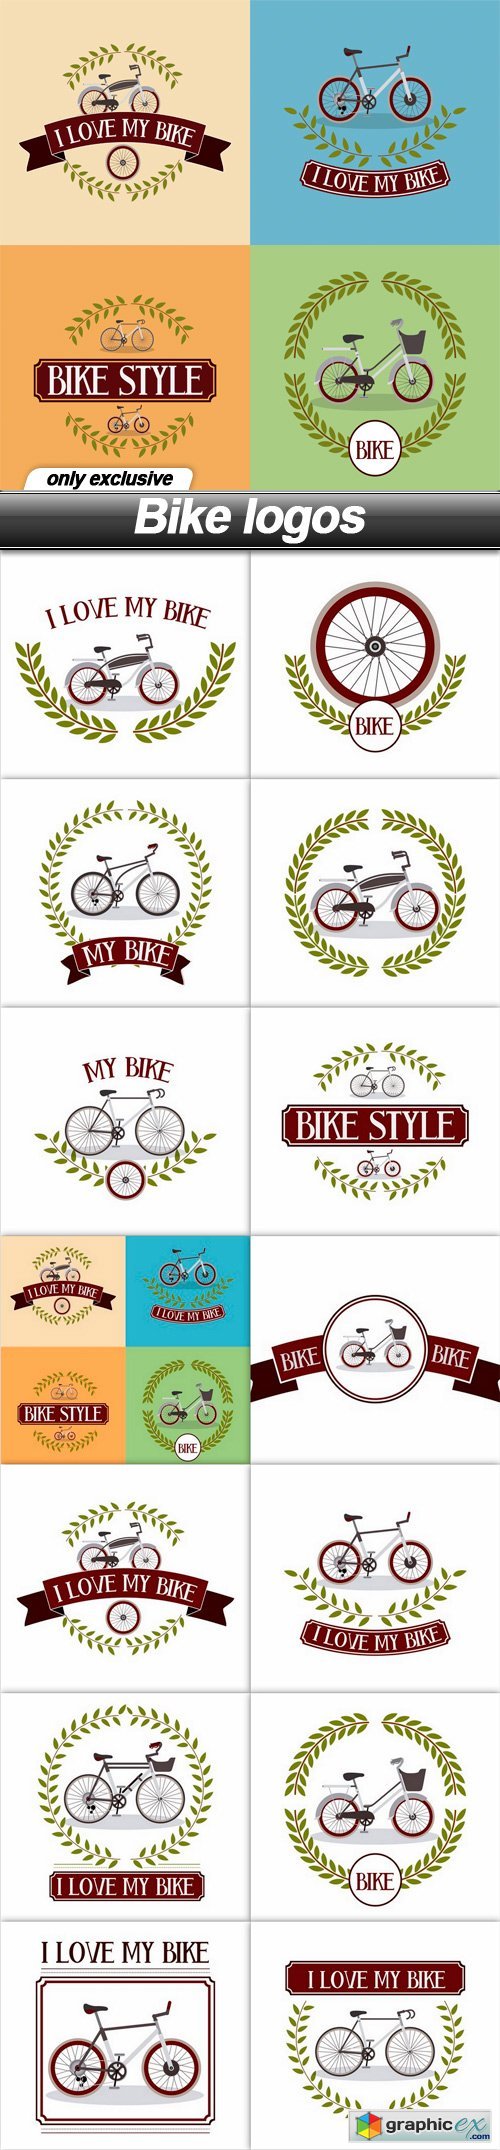 Bike logos - 14 EPS